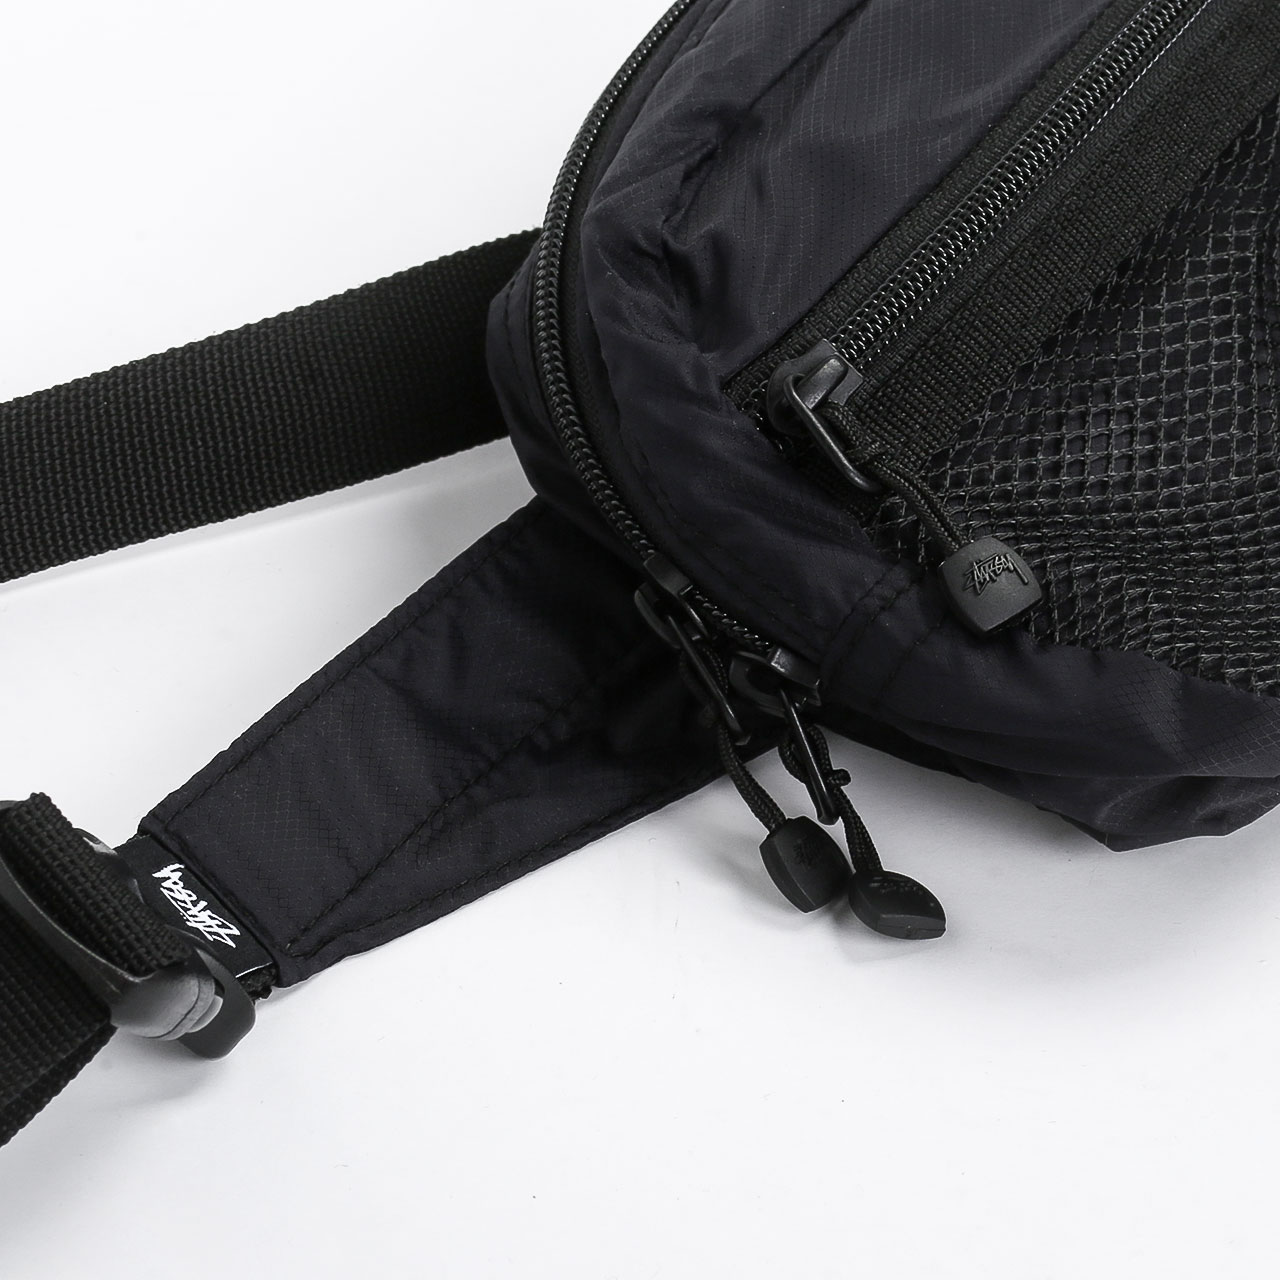  черная сумка Stussy Light Weight Waist Bag 134210-black - цена, описание, фото 3